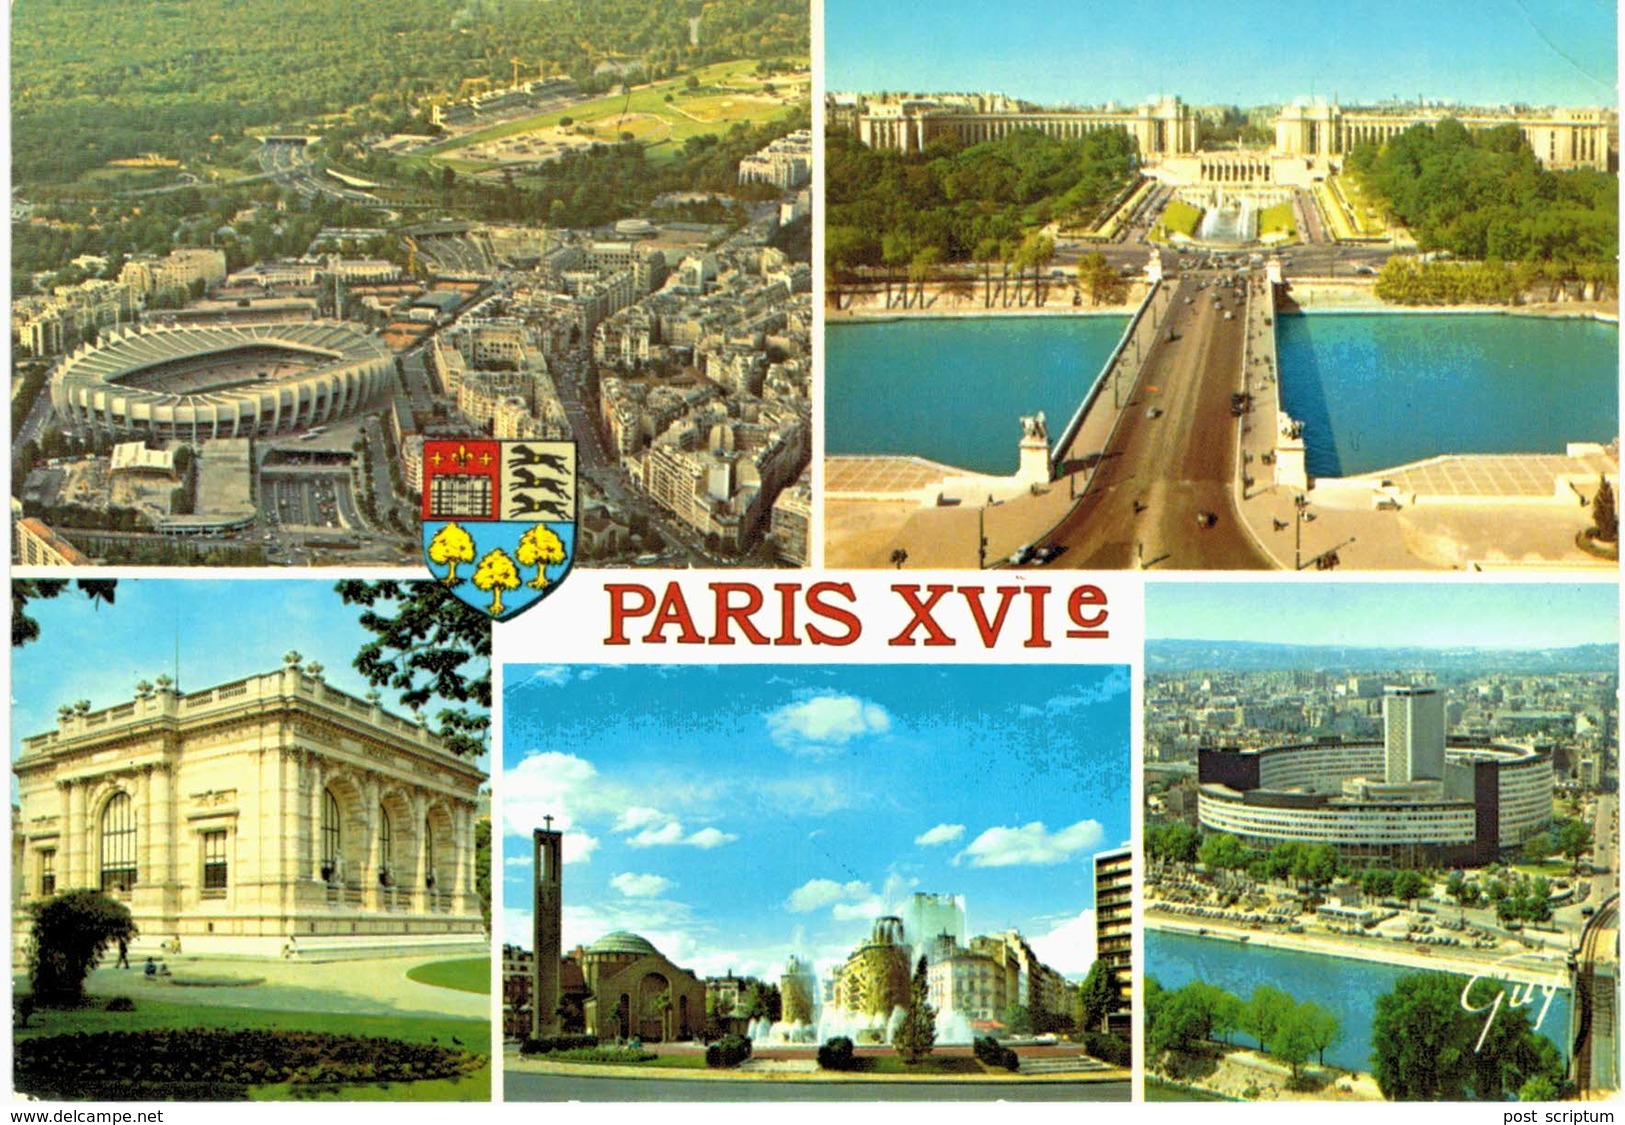 Paris - XVIe - Stade Parc Des Princes - Hippodrome - Bois De Boulogne - Pont D'iéna - Musée Galliéra - Porte De St Cloud - Arrondissement: 16